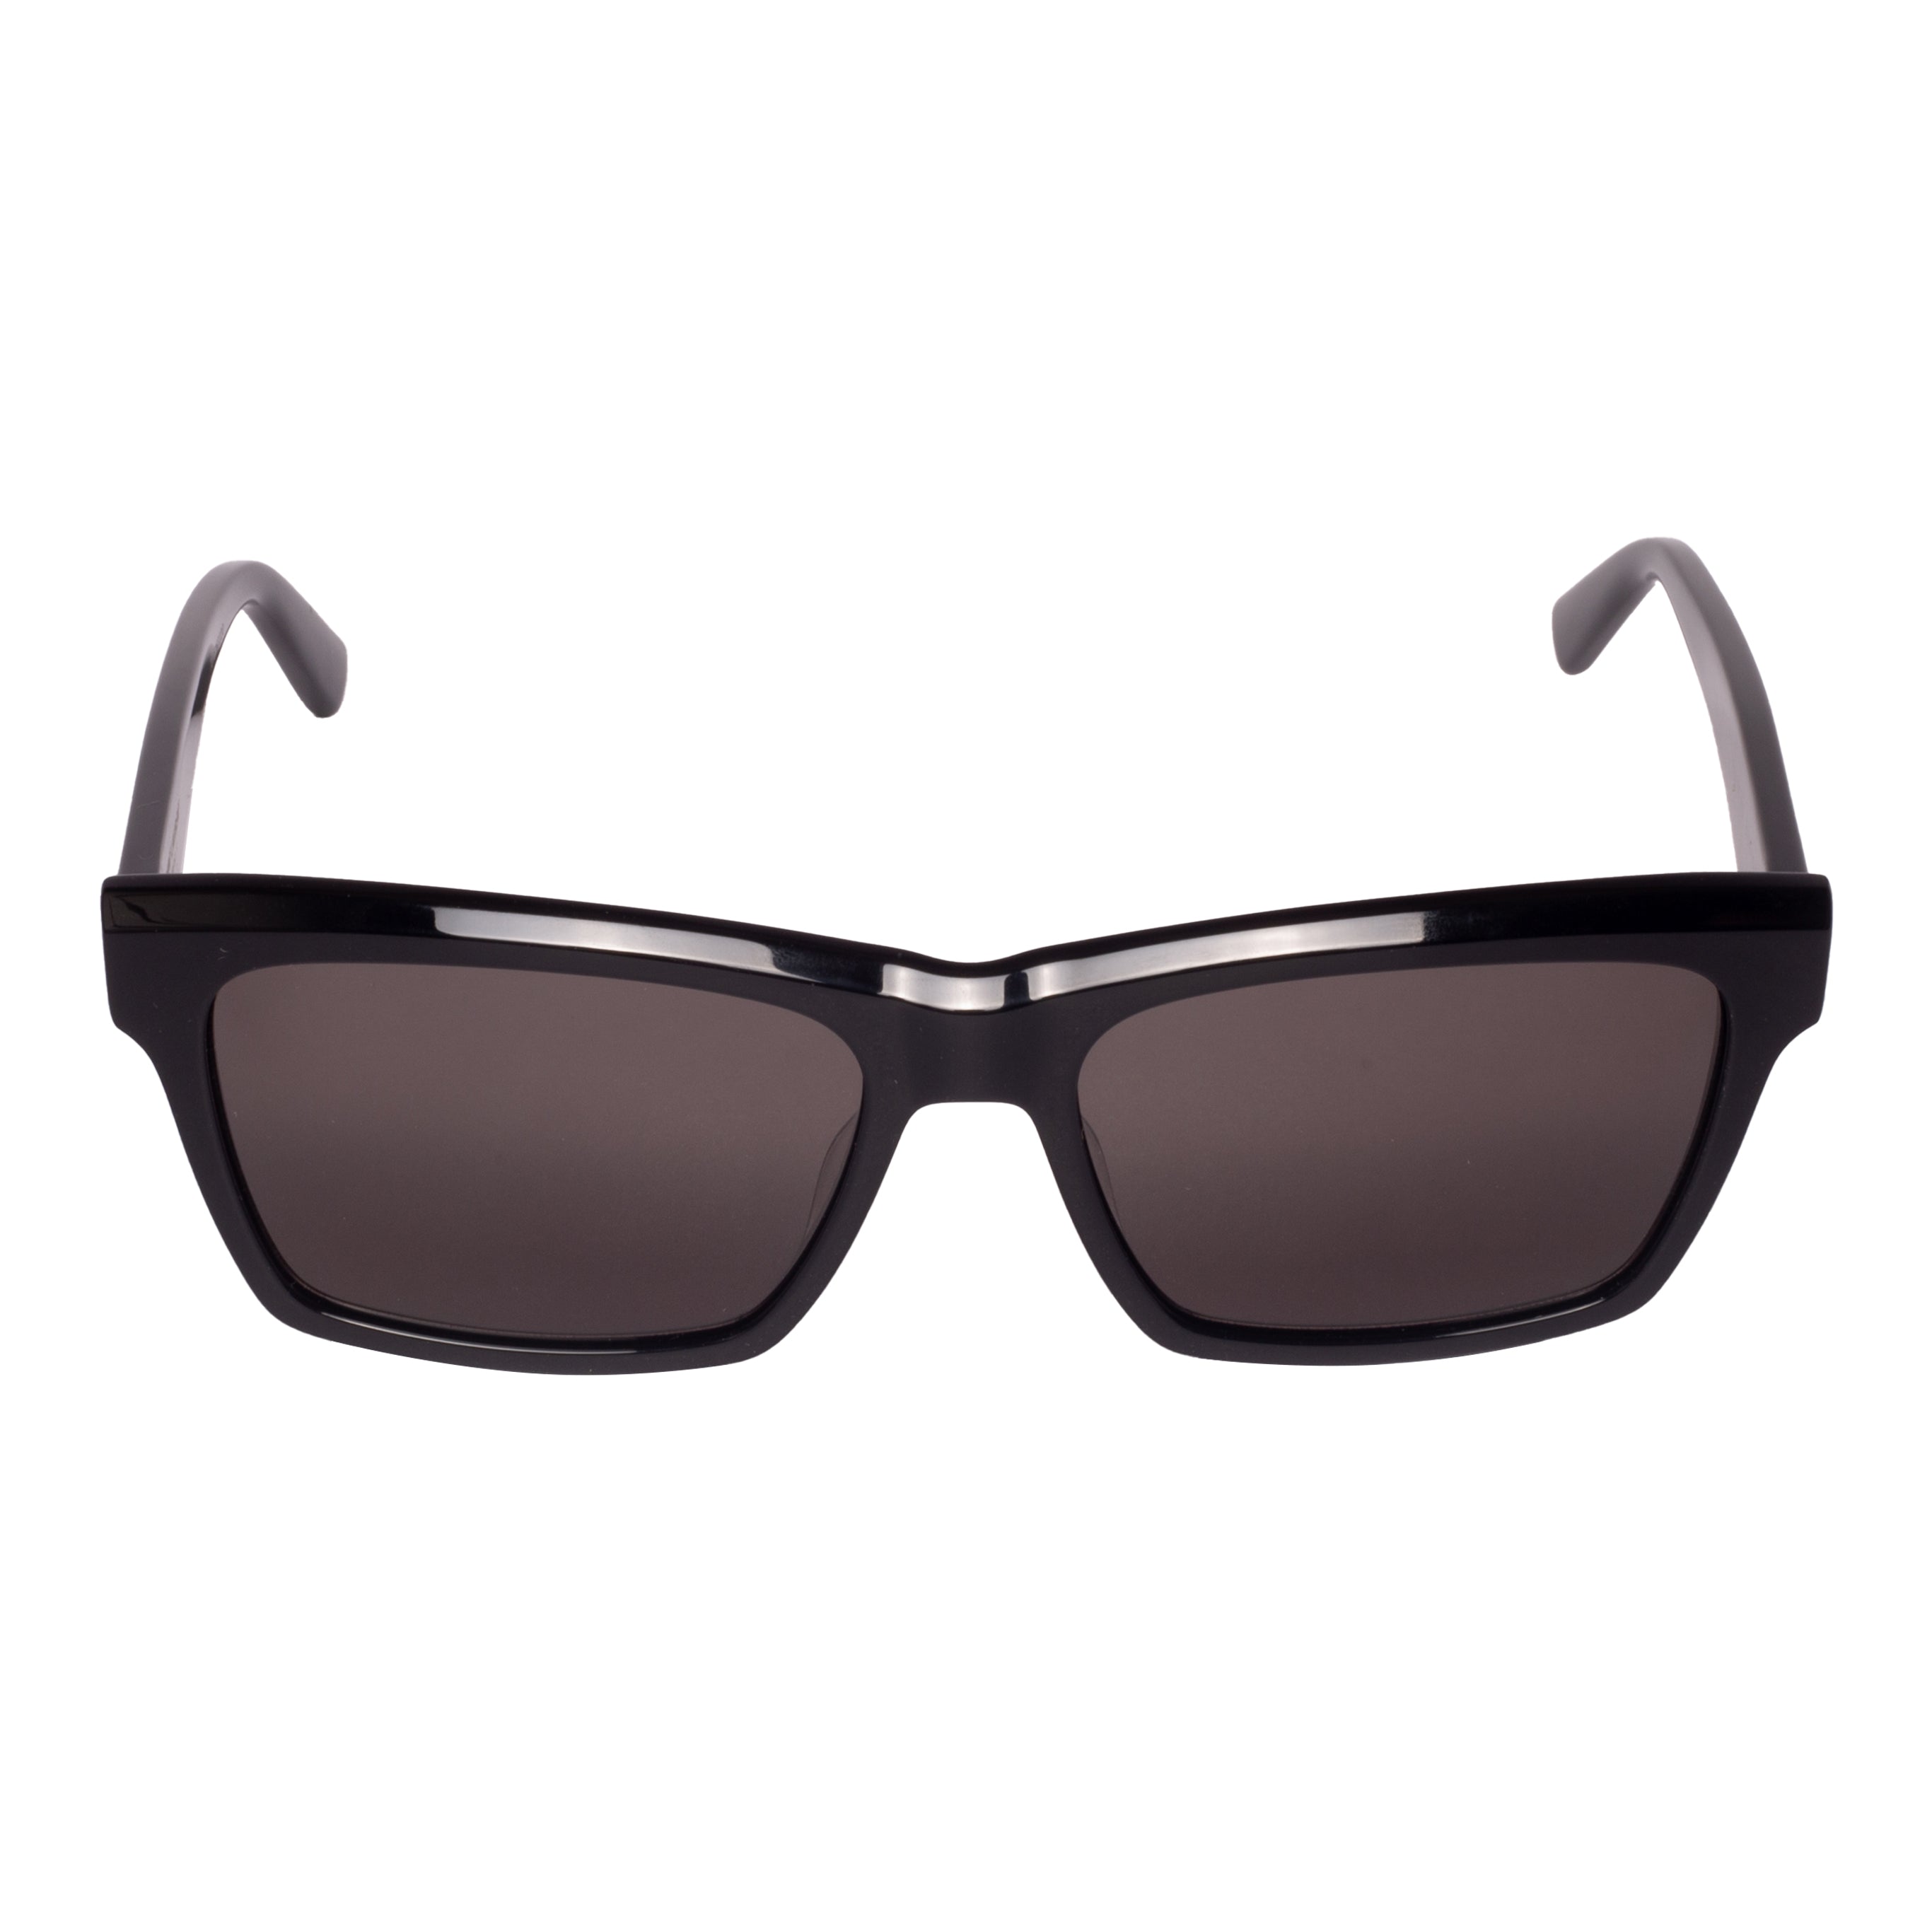 Saint Laurent-SL M104-56-004 Sunglasses - Premium Sunglasses from Saint Laurent - Just Rs. 27900! Shop now at Laxmi Opticians